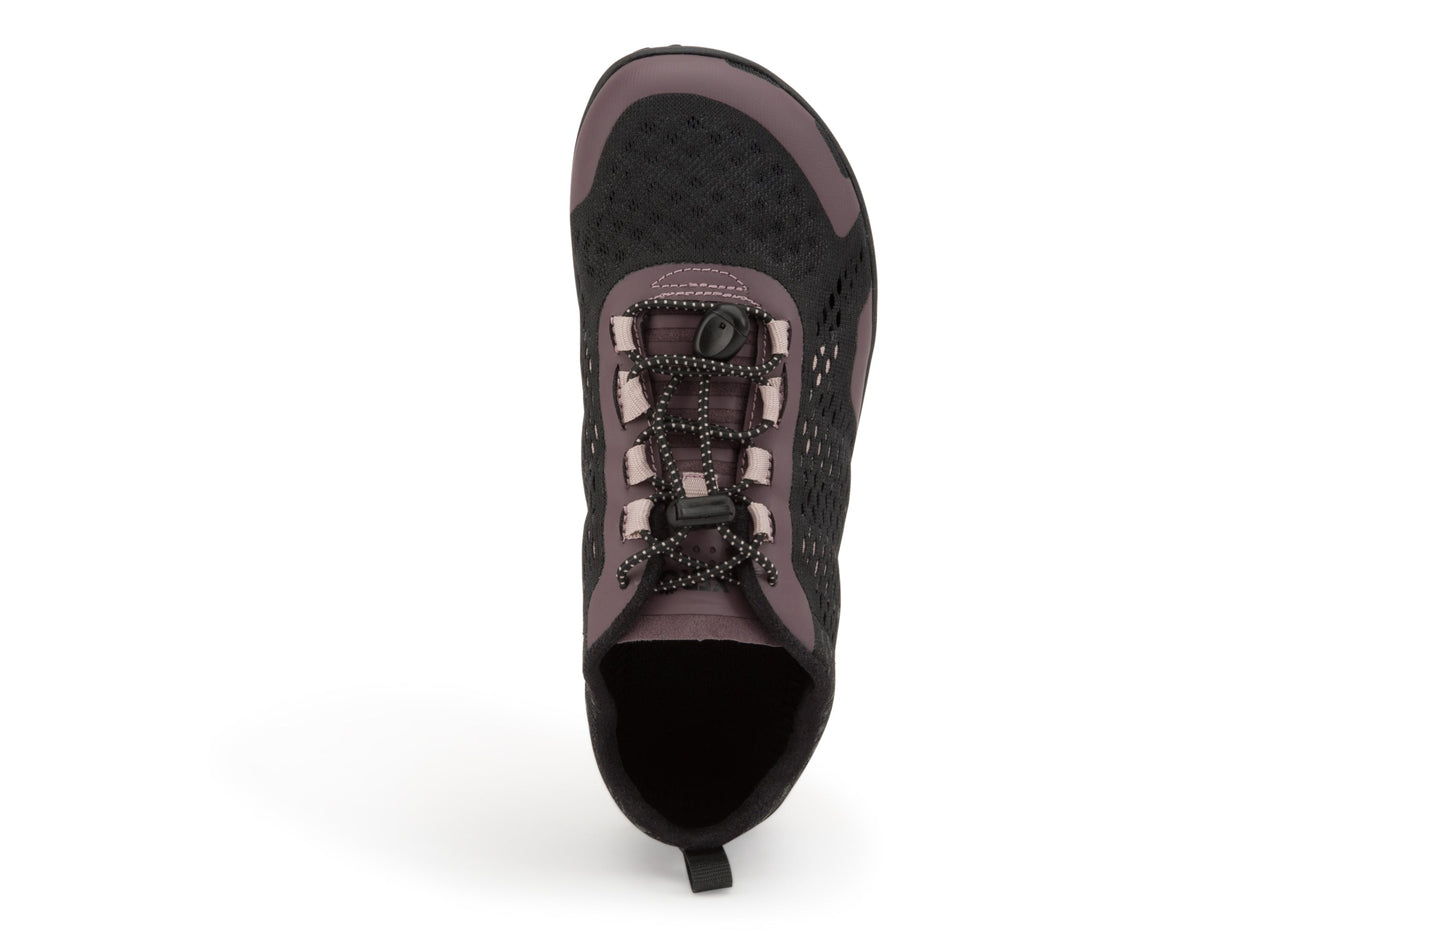 Xero Shoes Aqua X Sport Women barfods vandsko til kvinder i farven sparrow, top